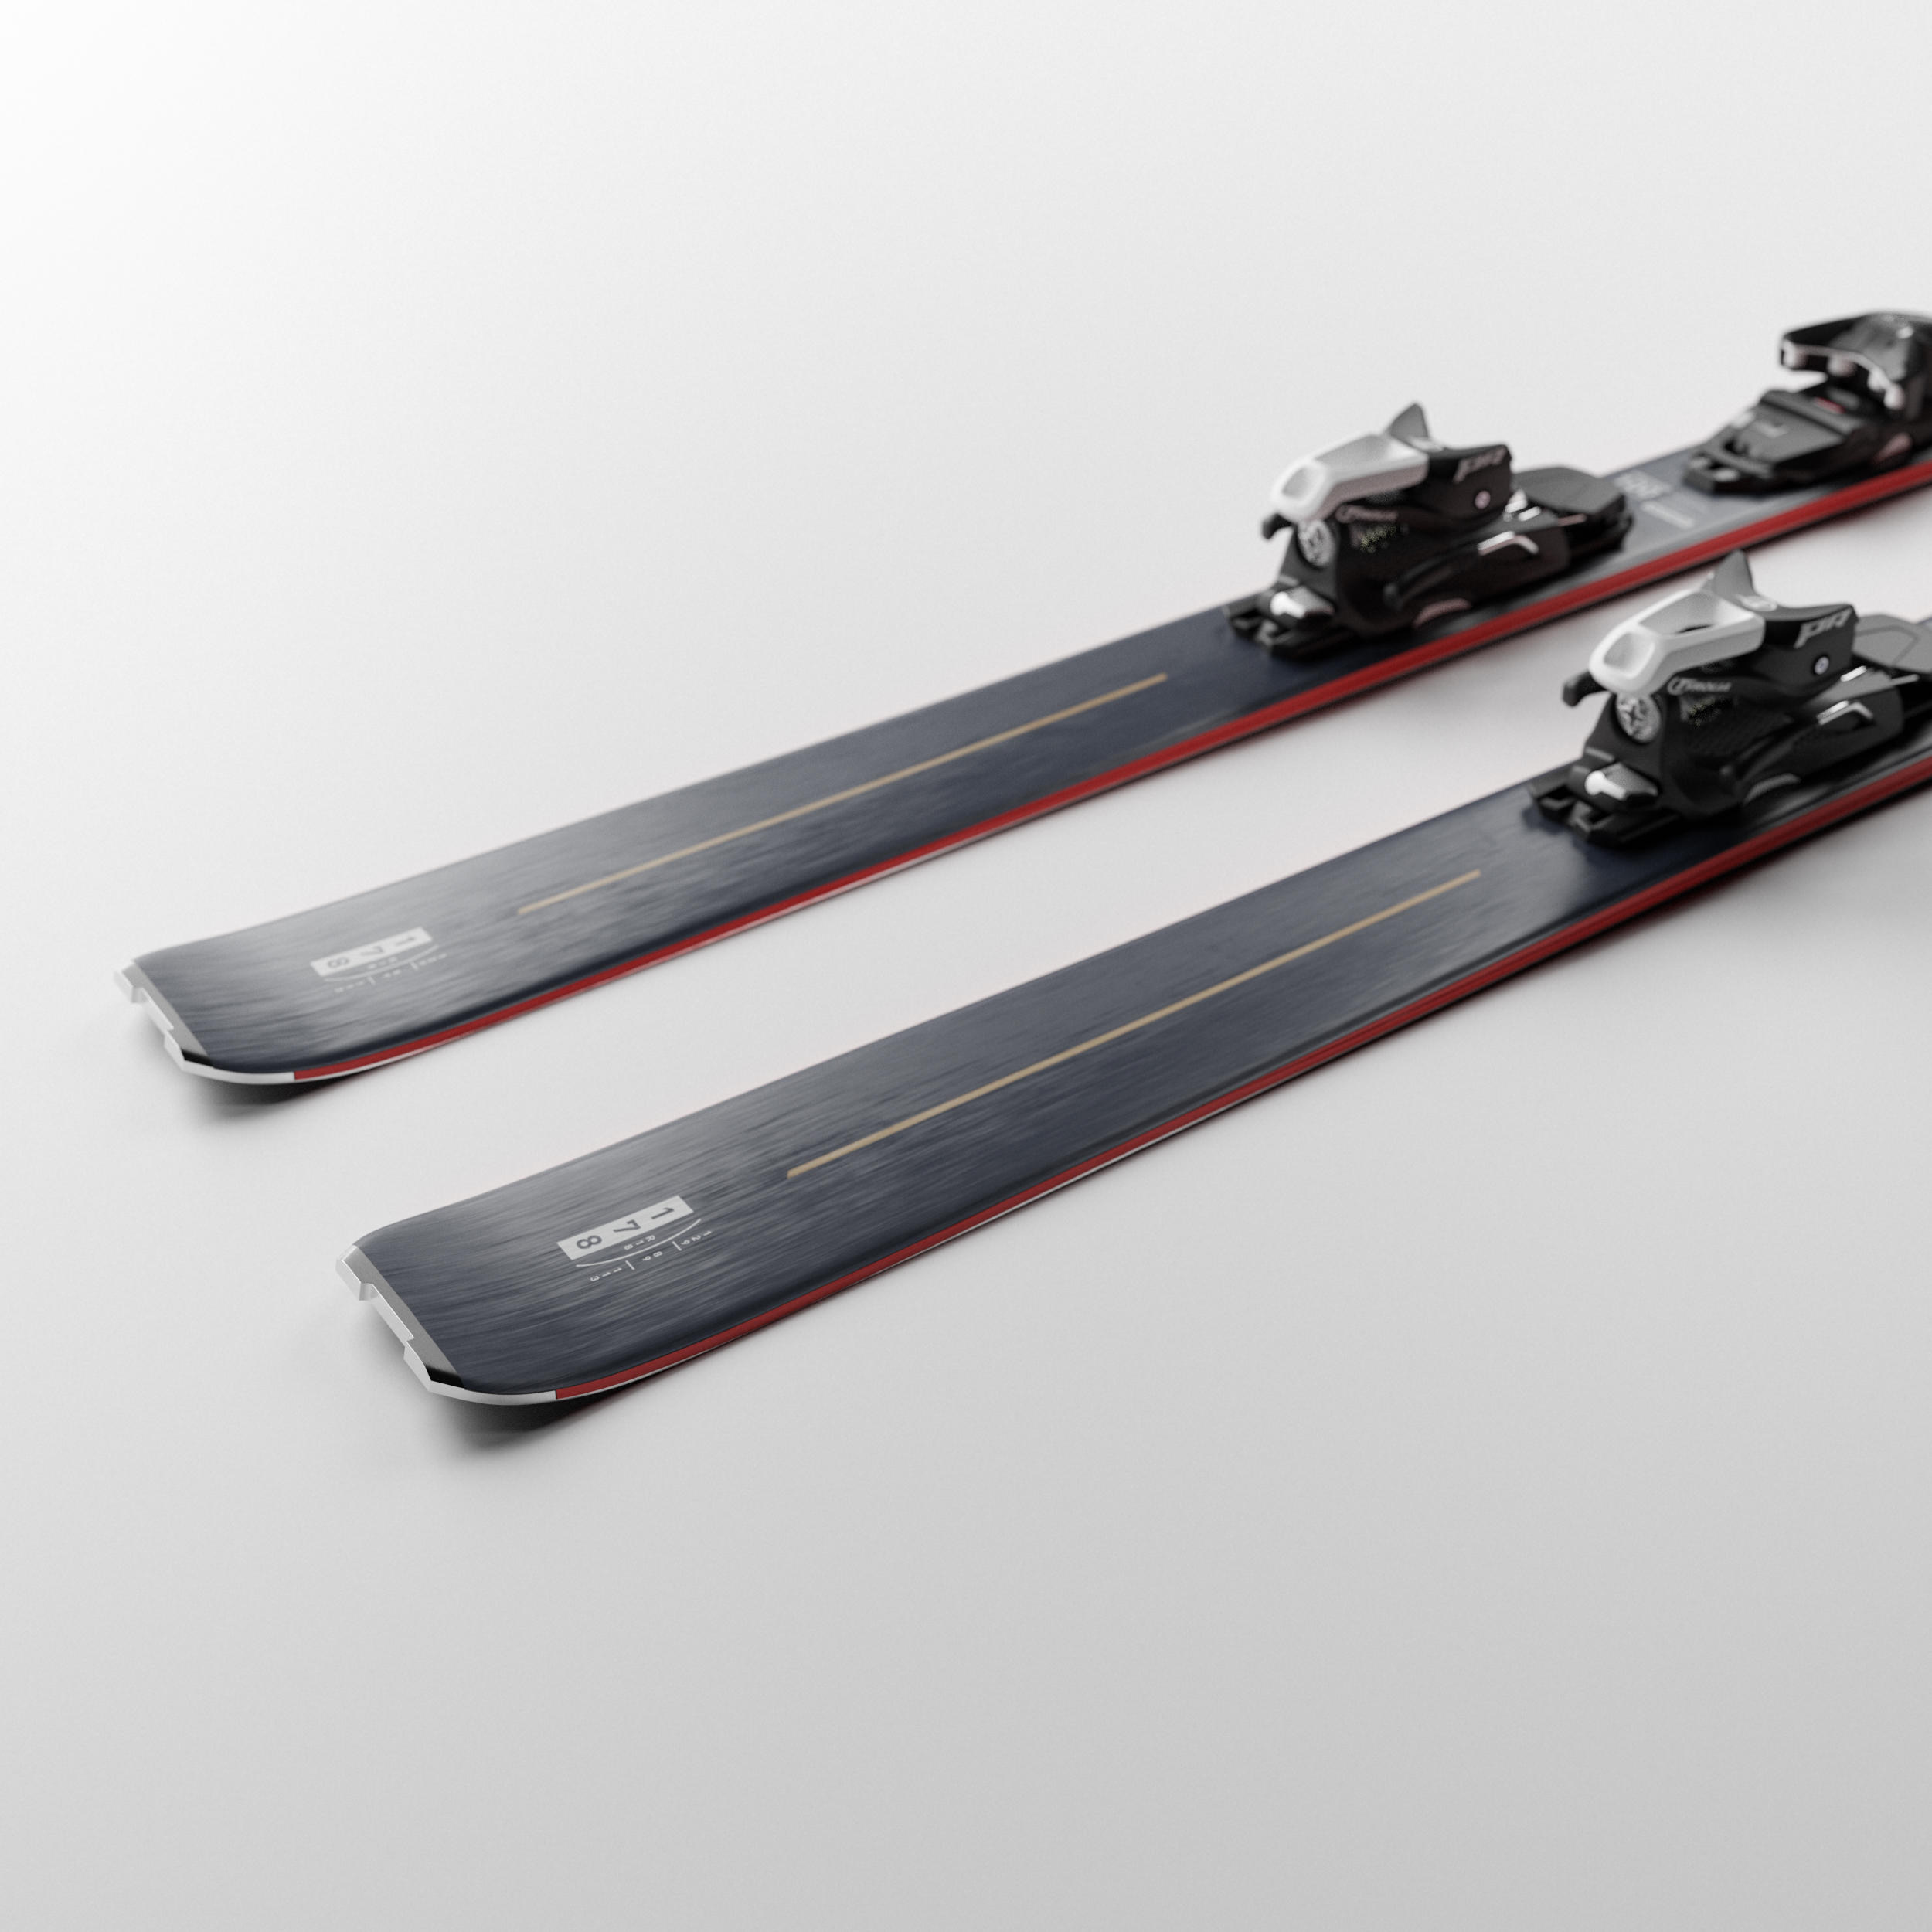 Ensemble de skis hors-piste - FR 100 gris - WEDZE